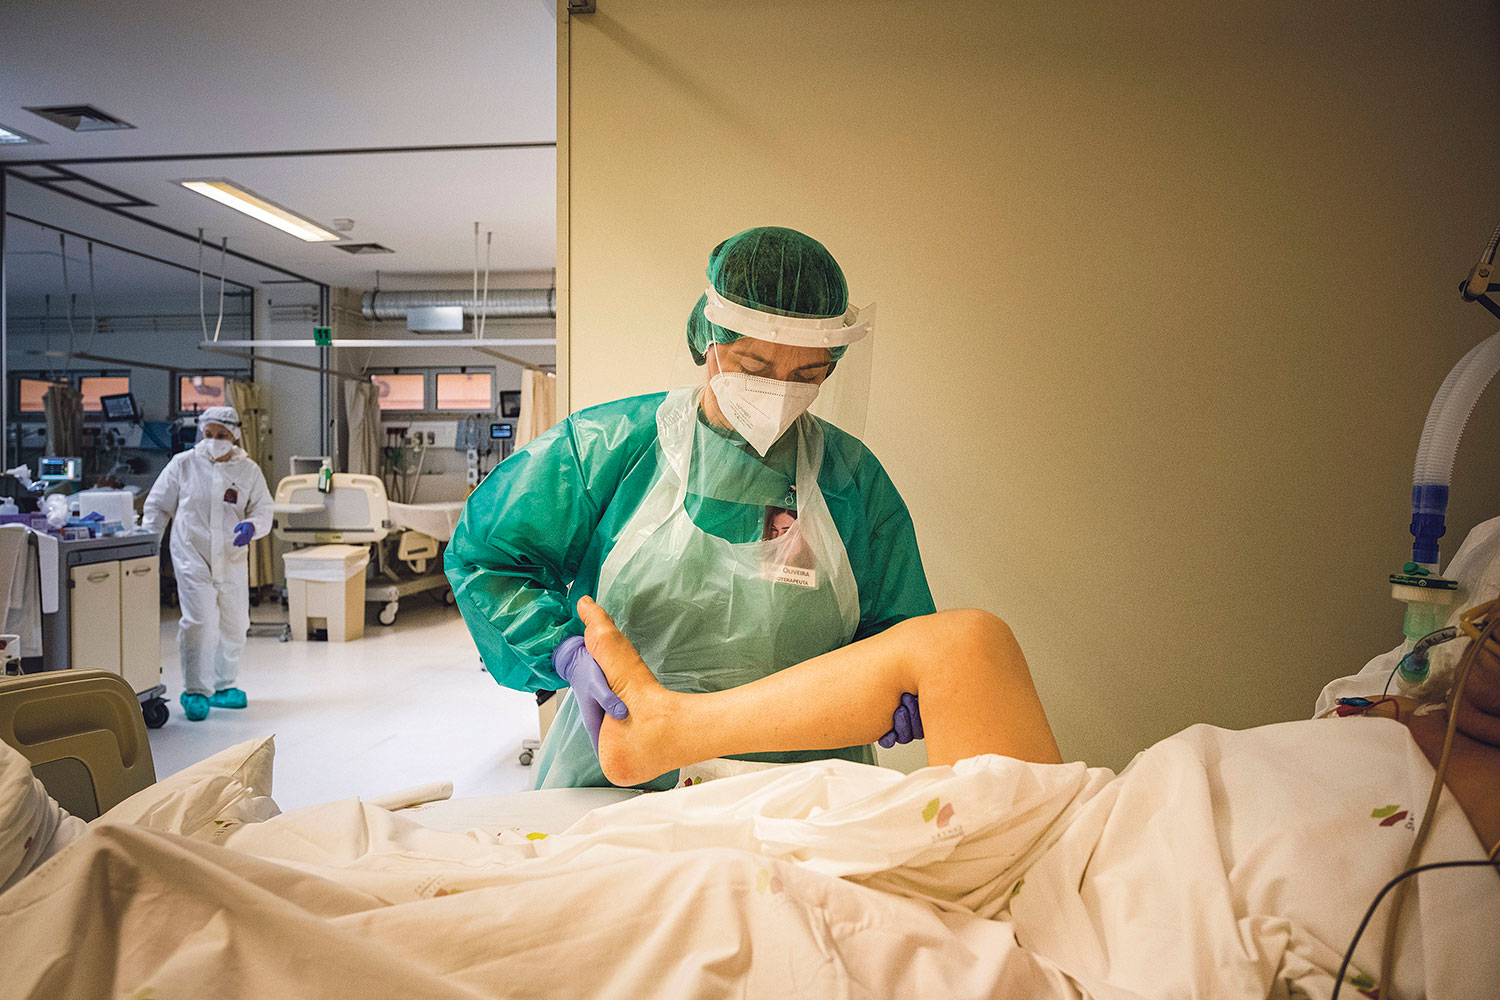 Fisioterapeuta com bata, máscara e viseira ajuda a movimentar a perna de um doente que está acamado